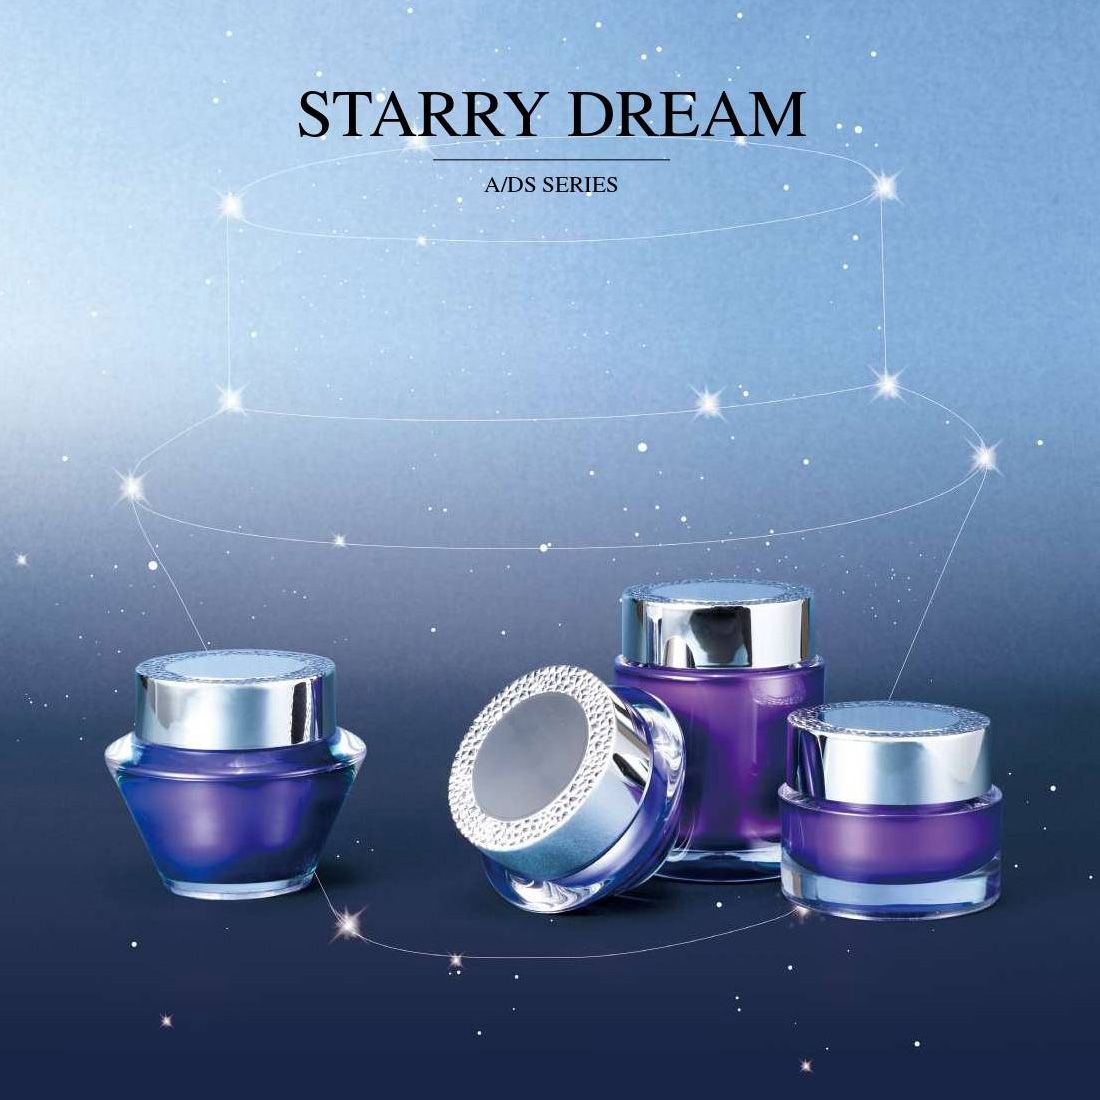 Starry Dream (envase acrílico de lujo para cosméticos y cuidado de la piel) Serie A/DS